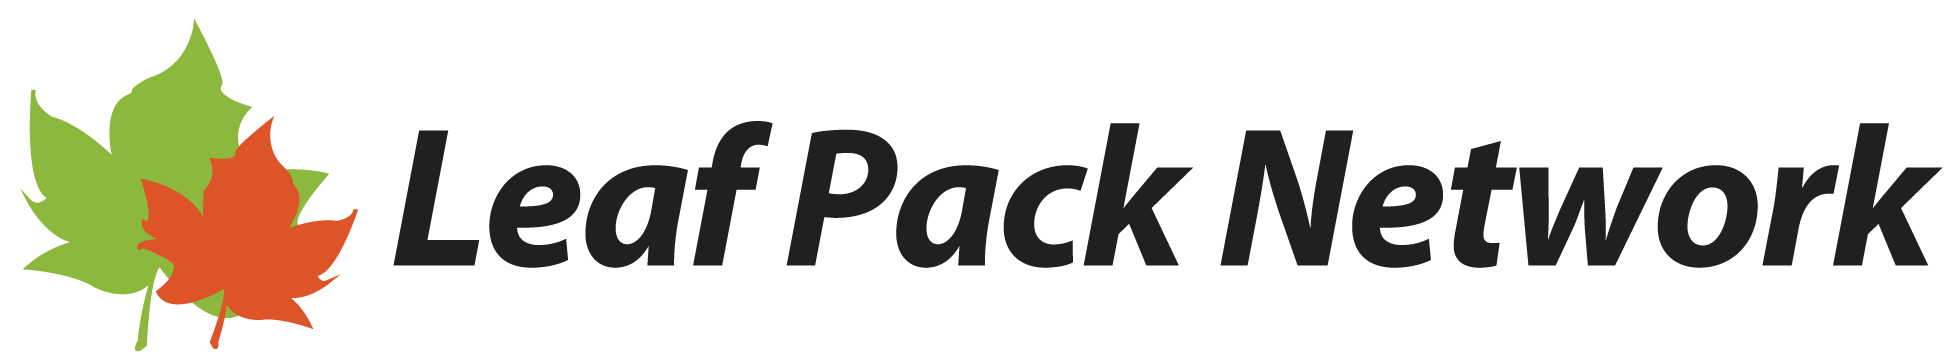 Leaf Pack Network logo